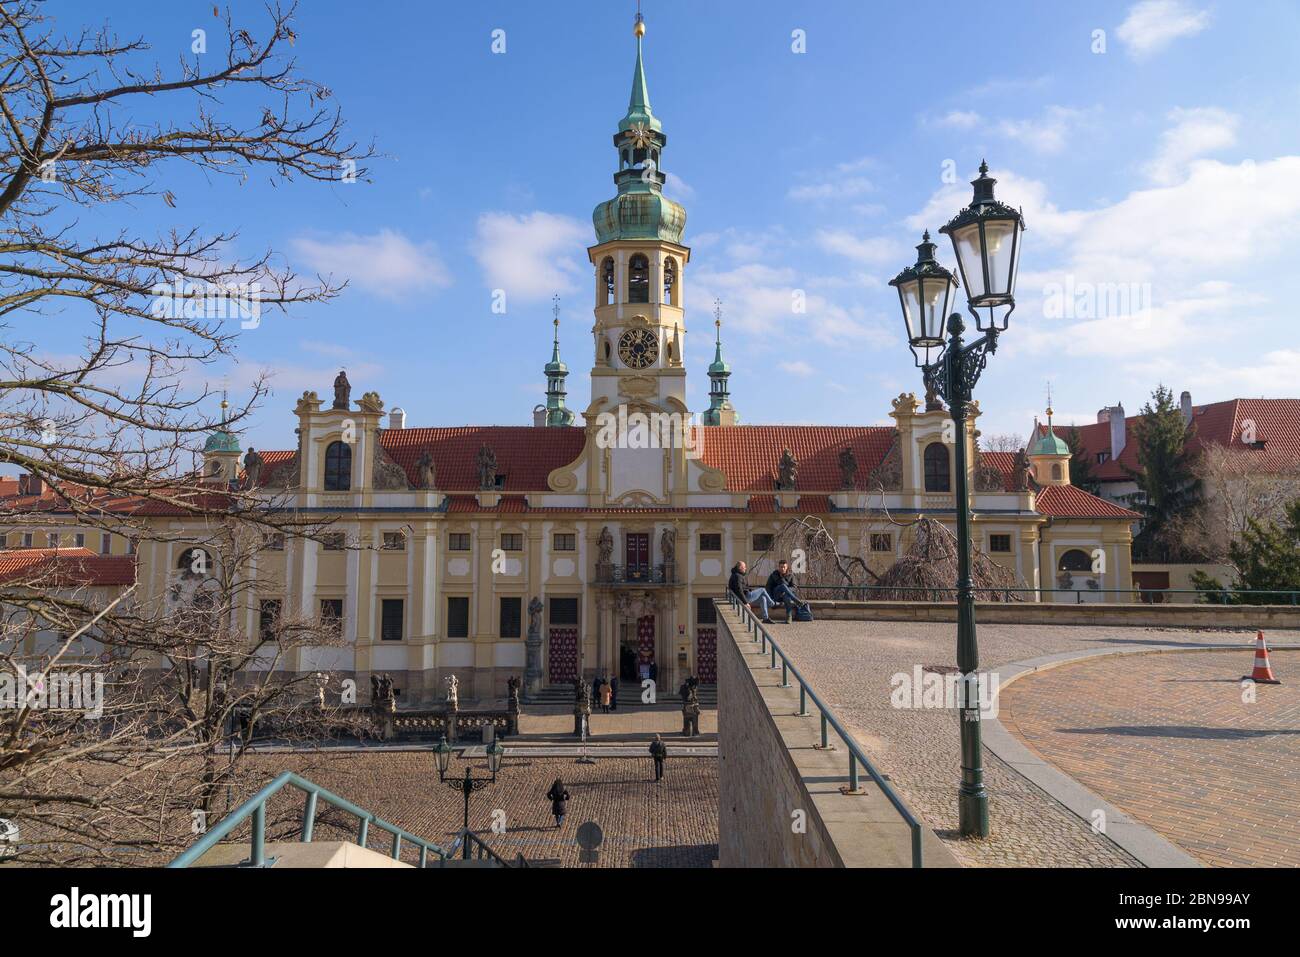 Facade of Loreto pilgrimage destination in Prague Stock Photo